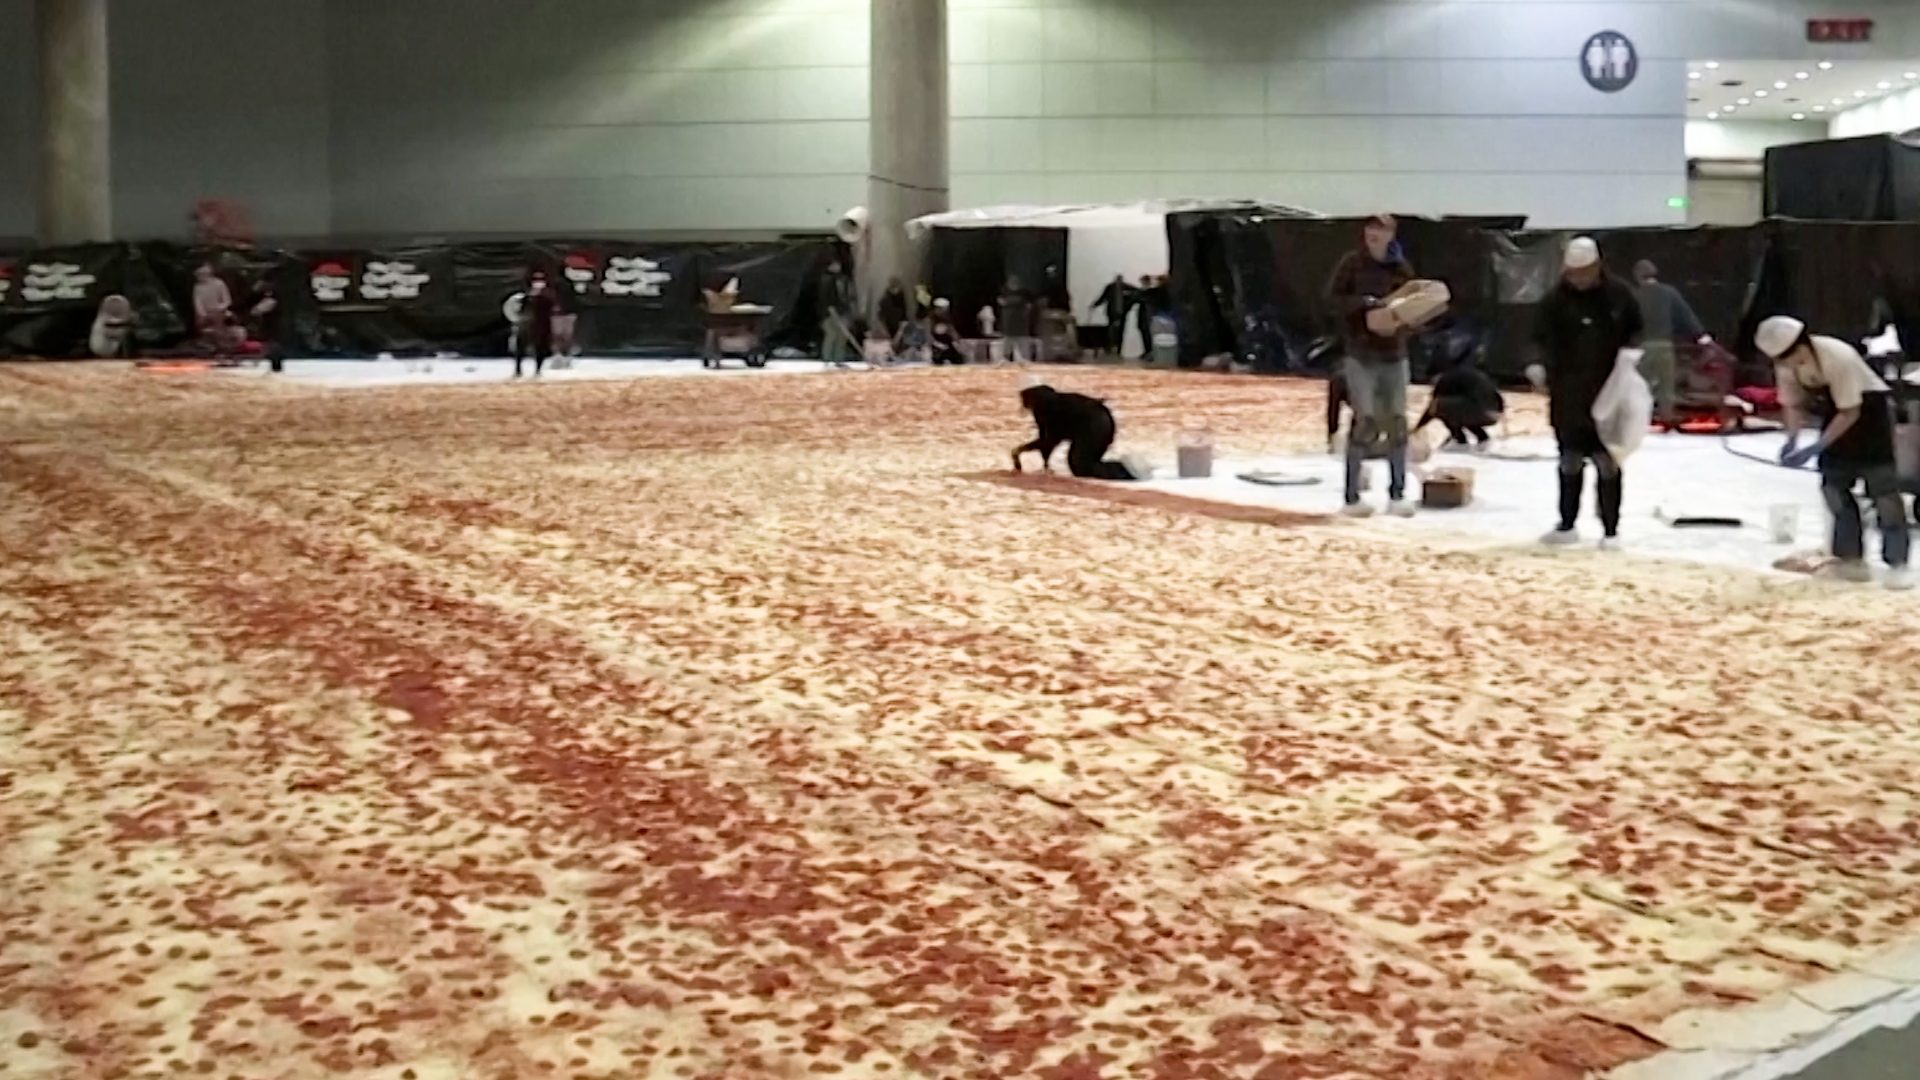 Pizza Hut creates massive pepperoni pizza, breaks world record - CNN Video